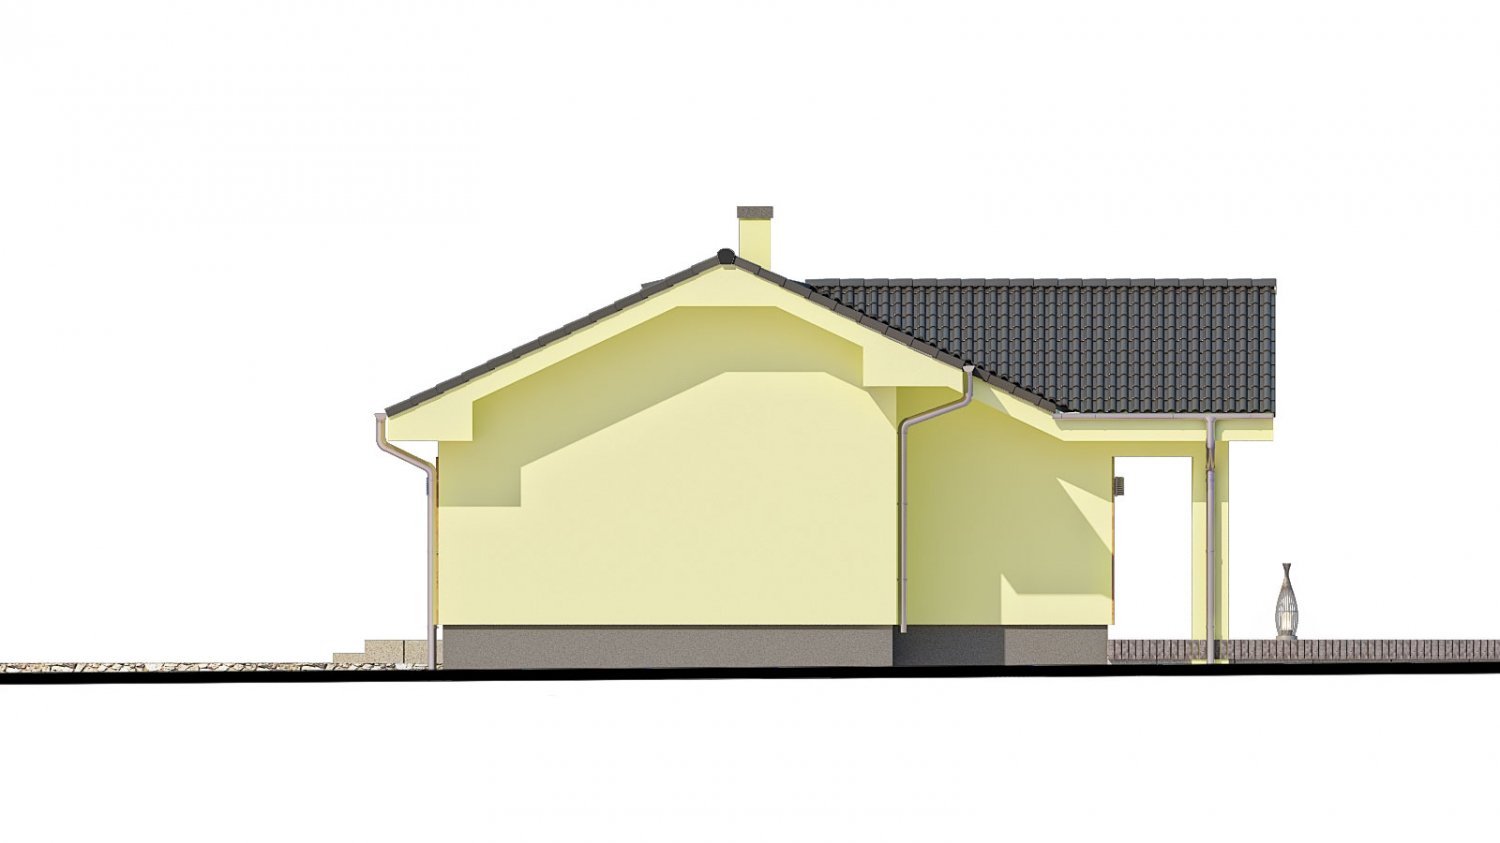 Zrkadlový pohľad 2. - Malý dům s terasou. Může být realizován jako dvojdům s projektem v zrcadlovém obraze.